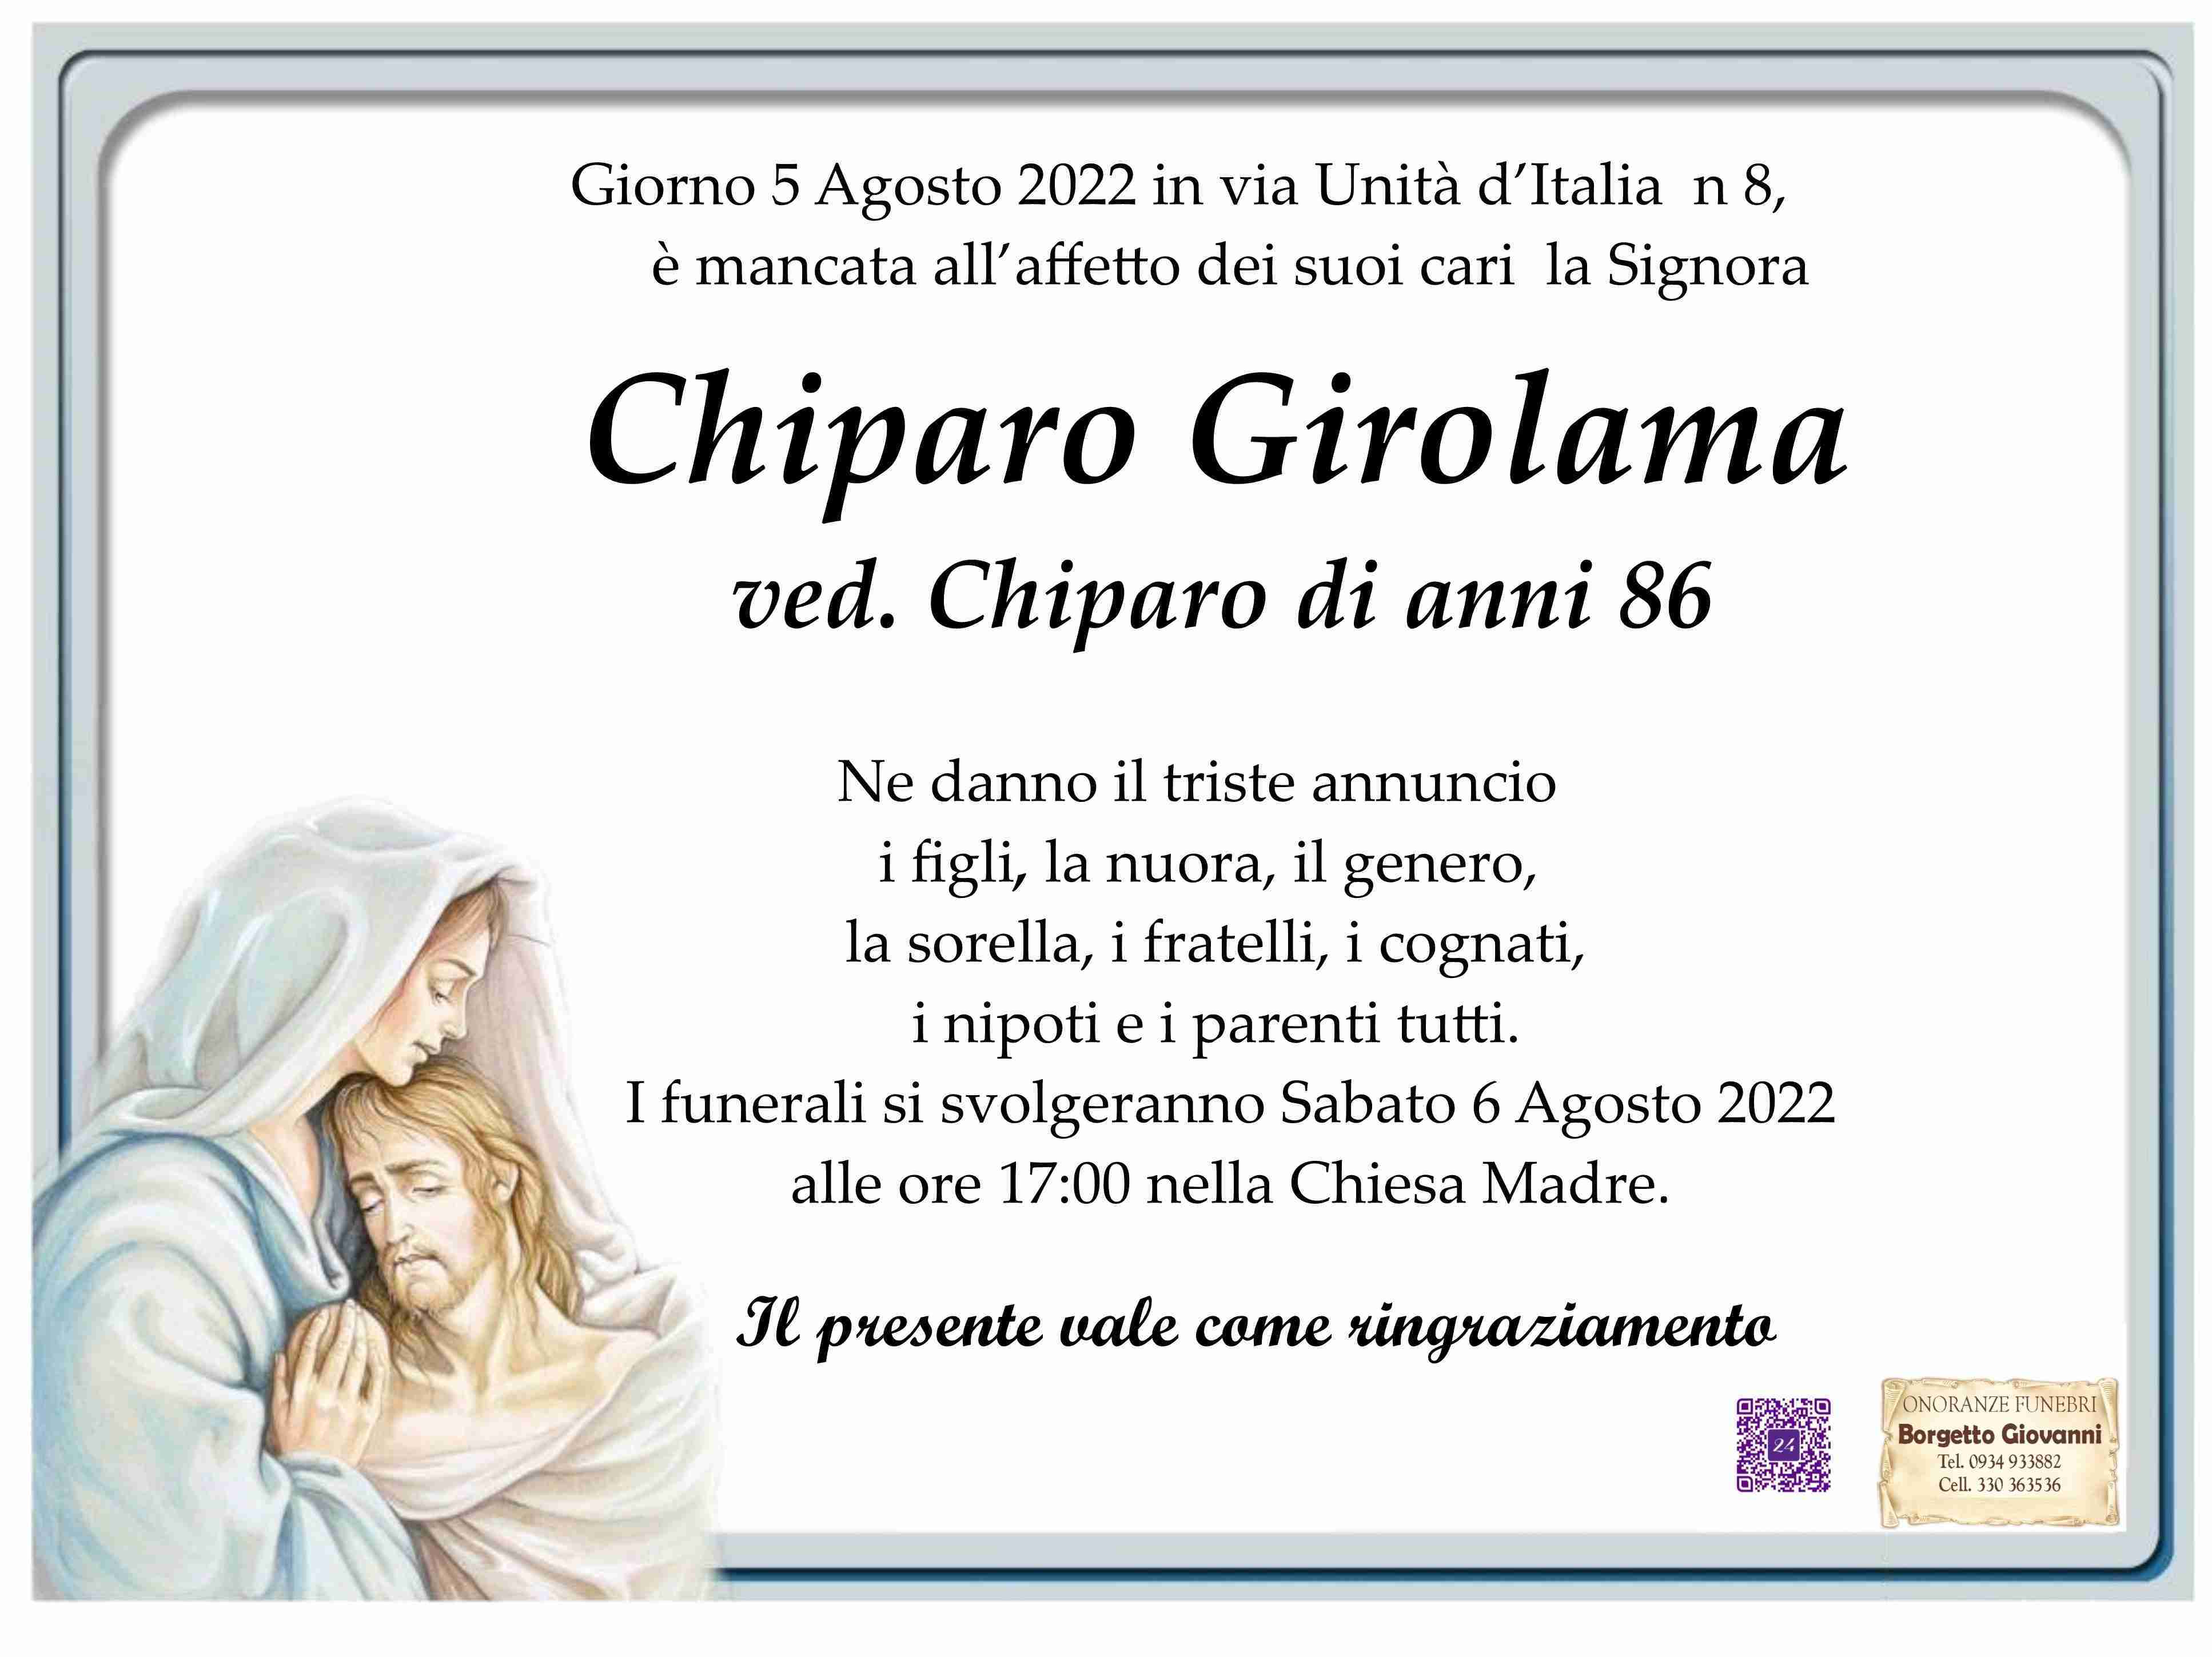 Girolama Chiparo